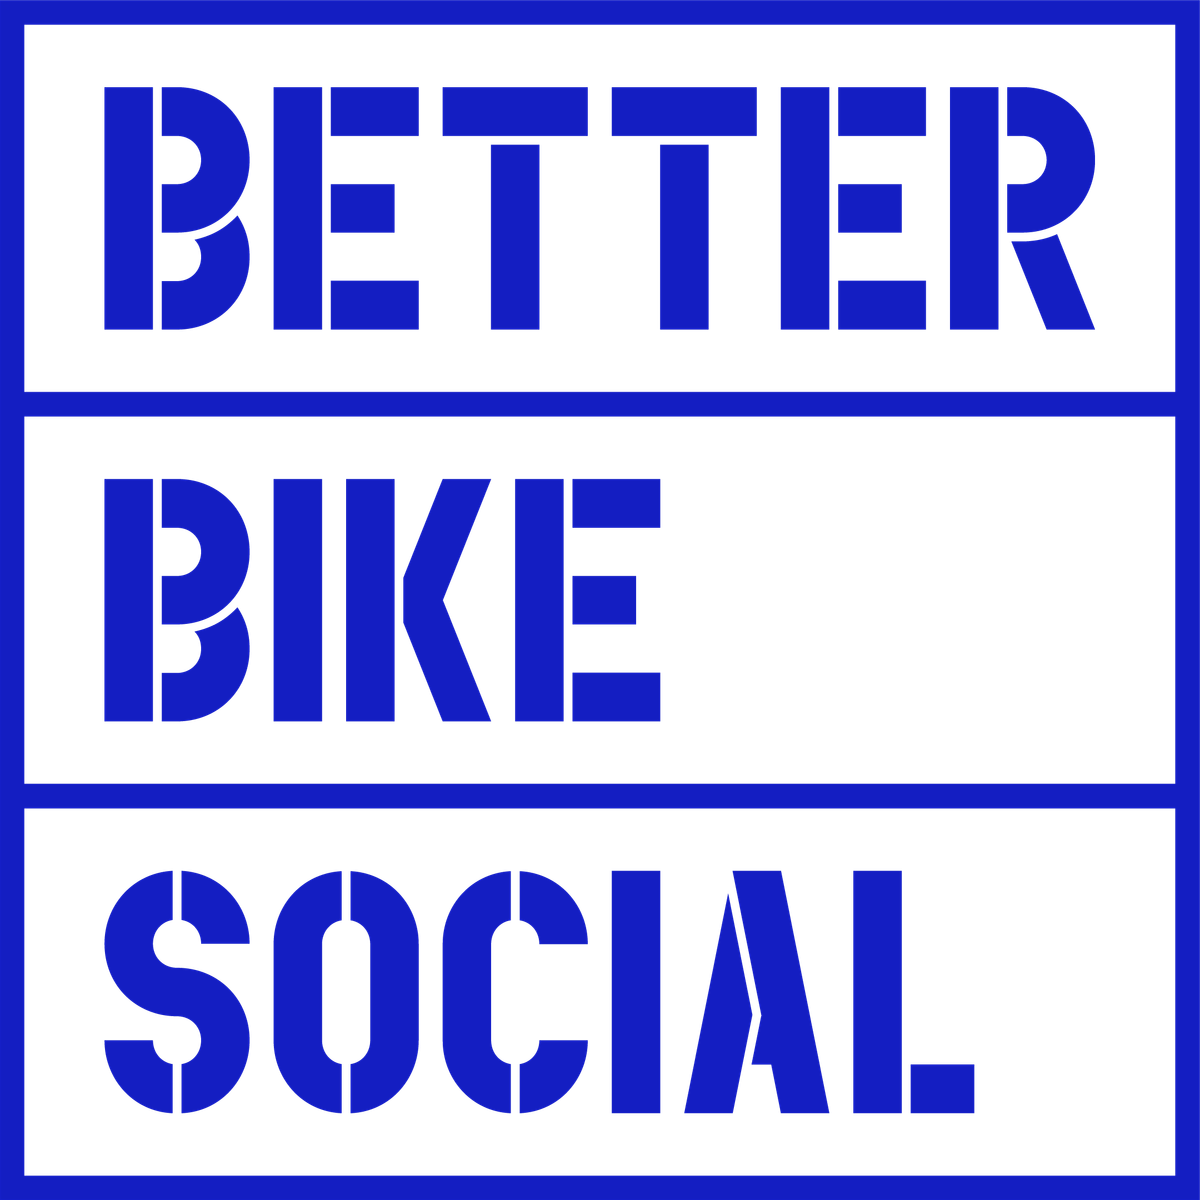 Better Bike Social: Brighton - Wednesday Session